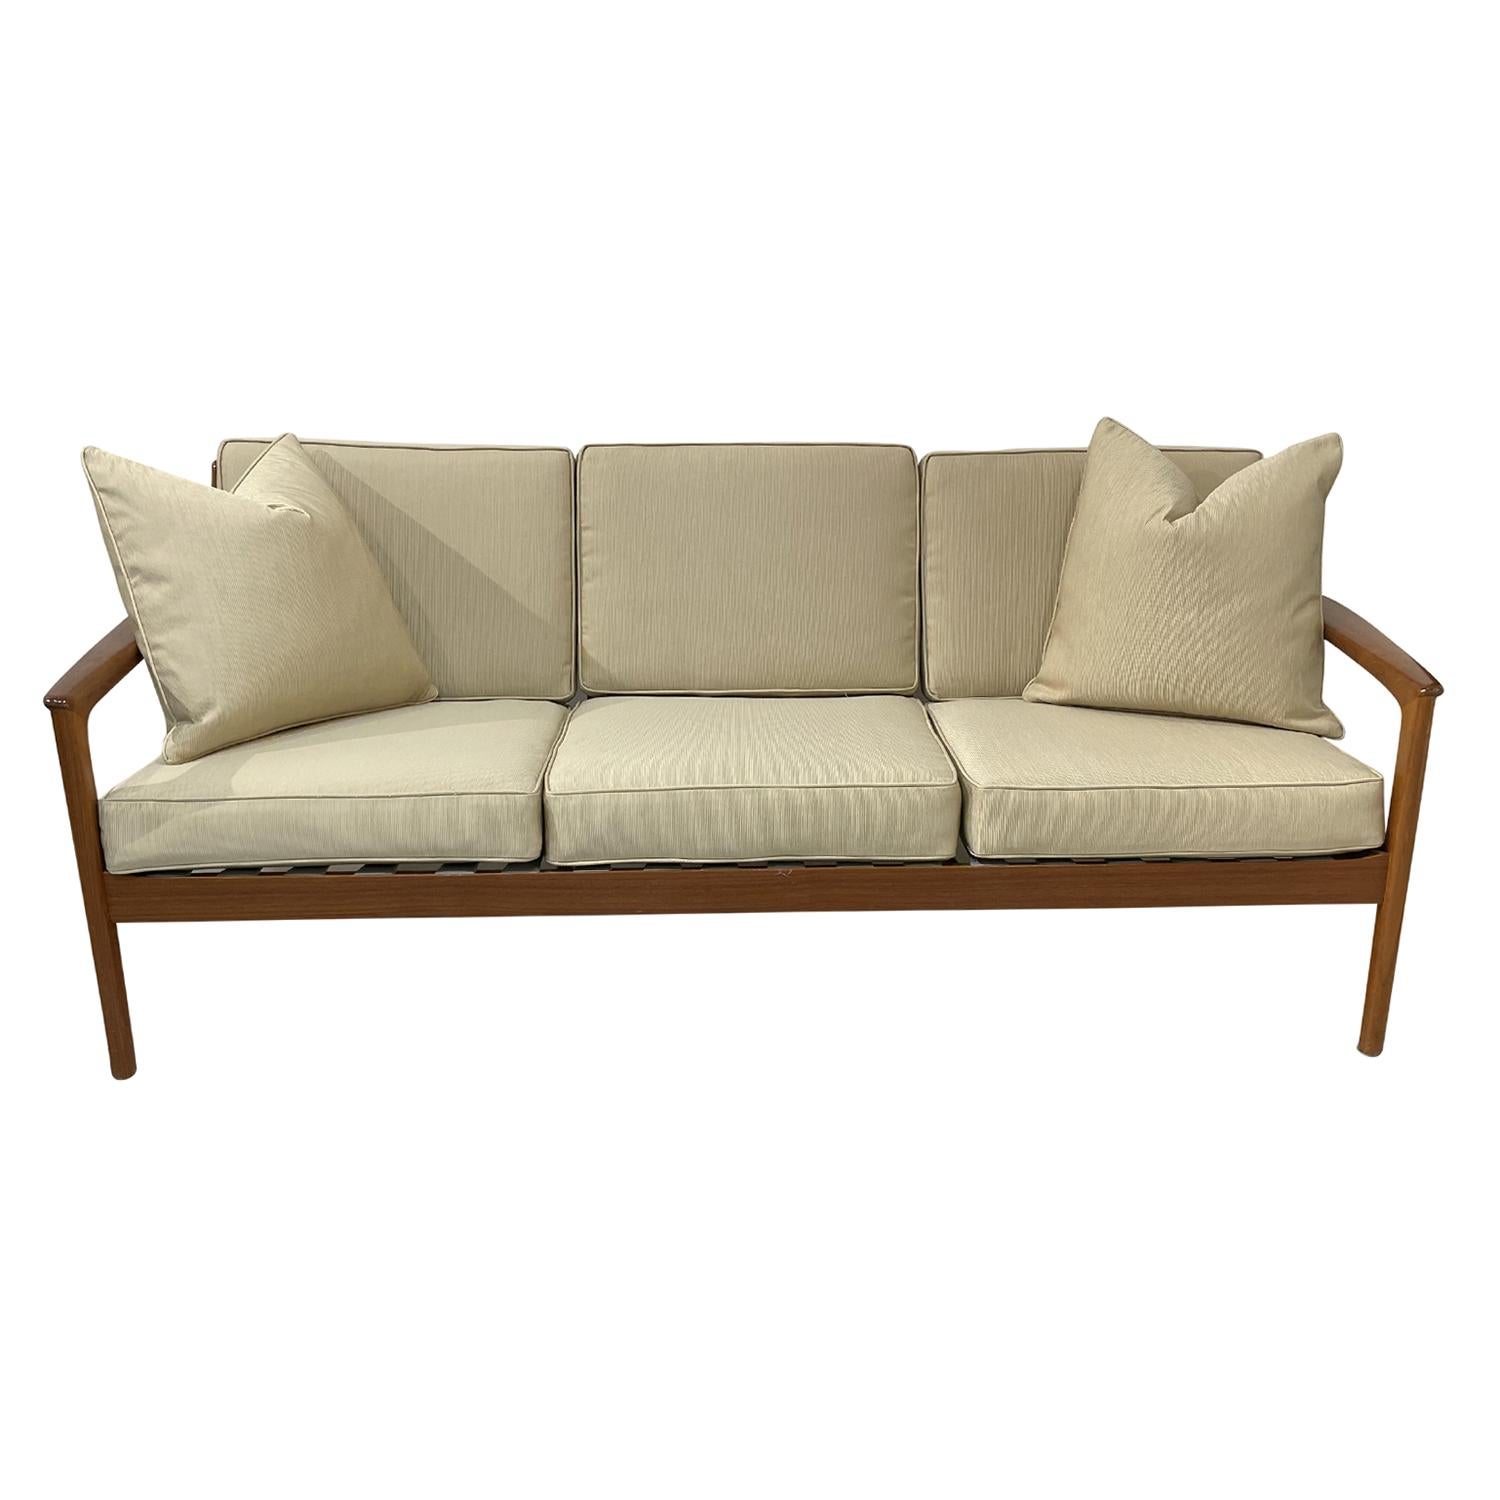 Ein dunkelbraunes, schwedisches Mid-Century Modern Dreisitzer-Sofa mit zwei Kissen aus handgefertigtem poliertem Teakholz, entworfen von Folke Ohlsson und hergestellt von DUX, in gutem Zustand. Das skandinavische Sofa, Canapé, hat eine leicht